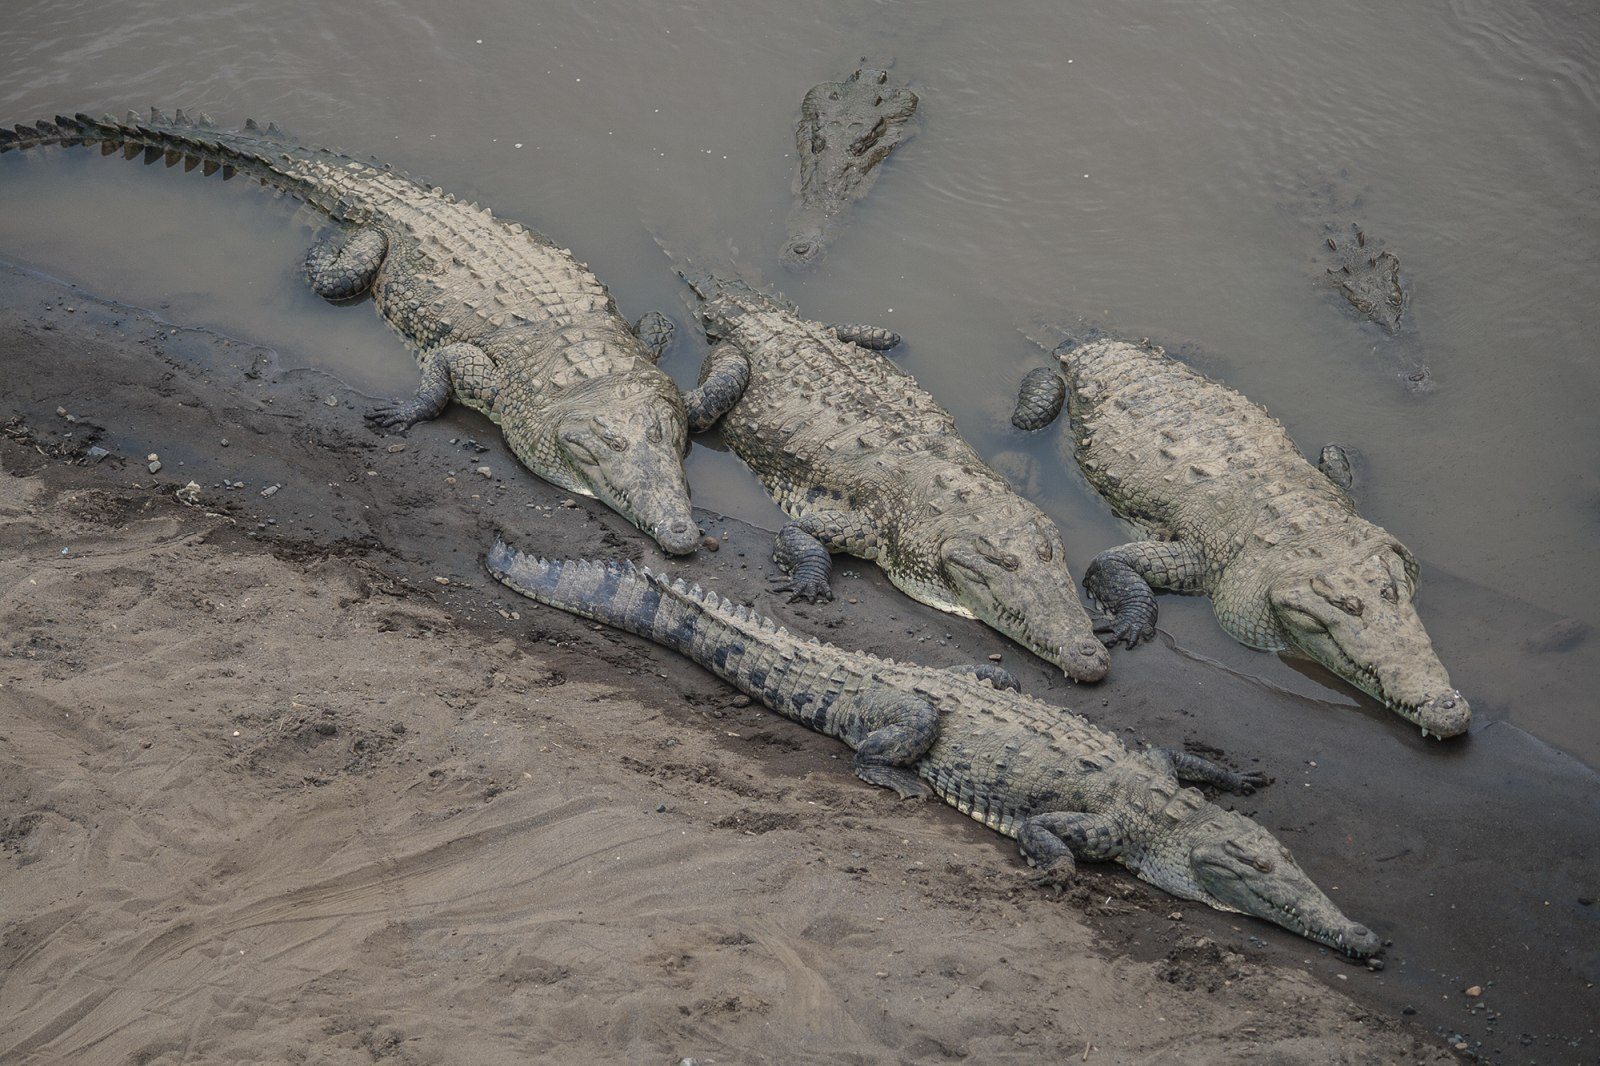 Qué hacer frente a la posible presencia de cocodrilos fuera de su hábitat?